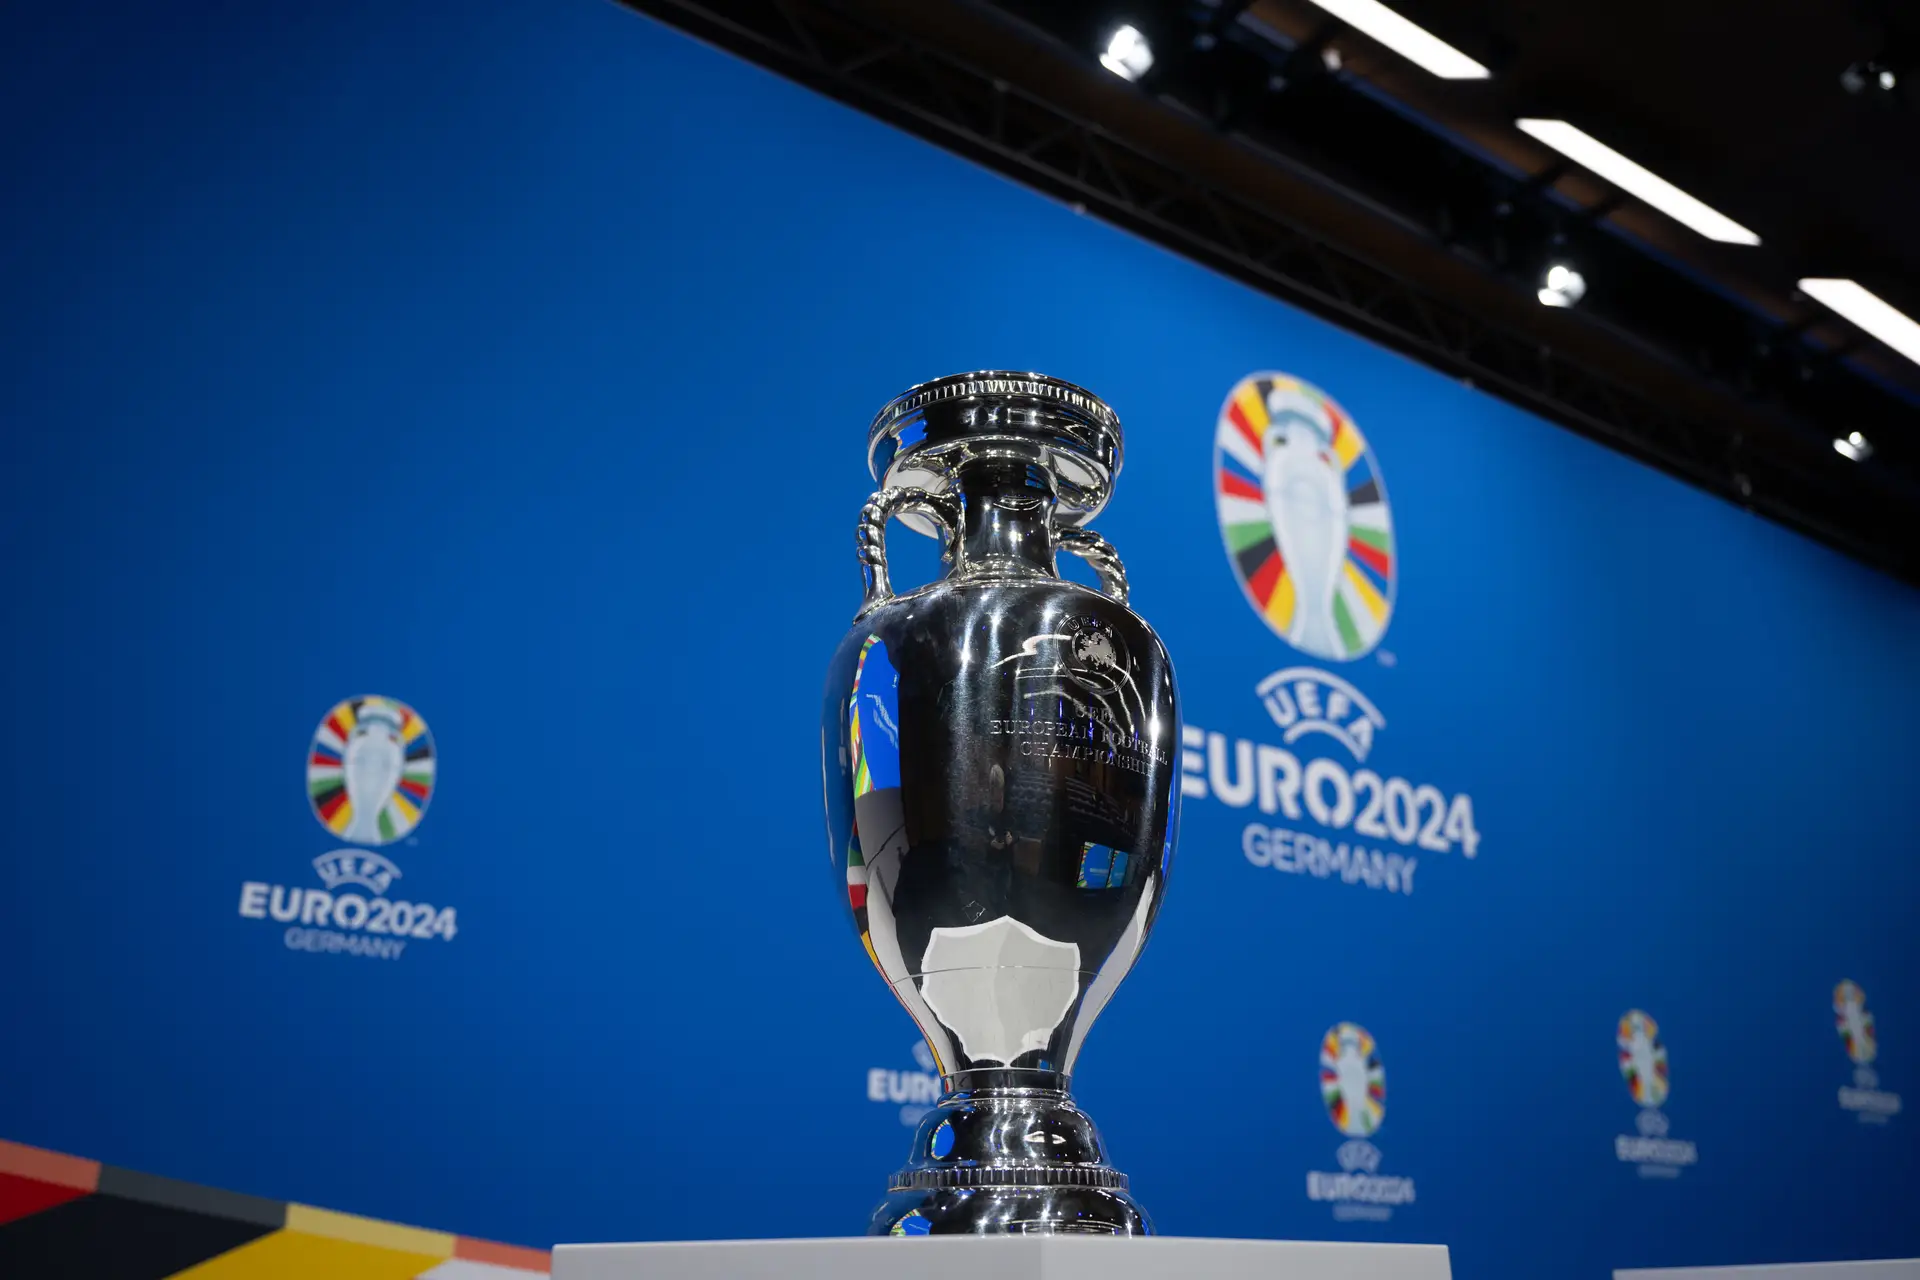 Onde vão passar os jogos do Euro 2024 em canal aberto? RTP, SIC